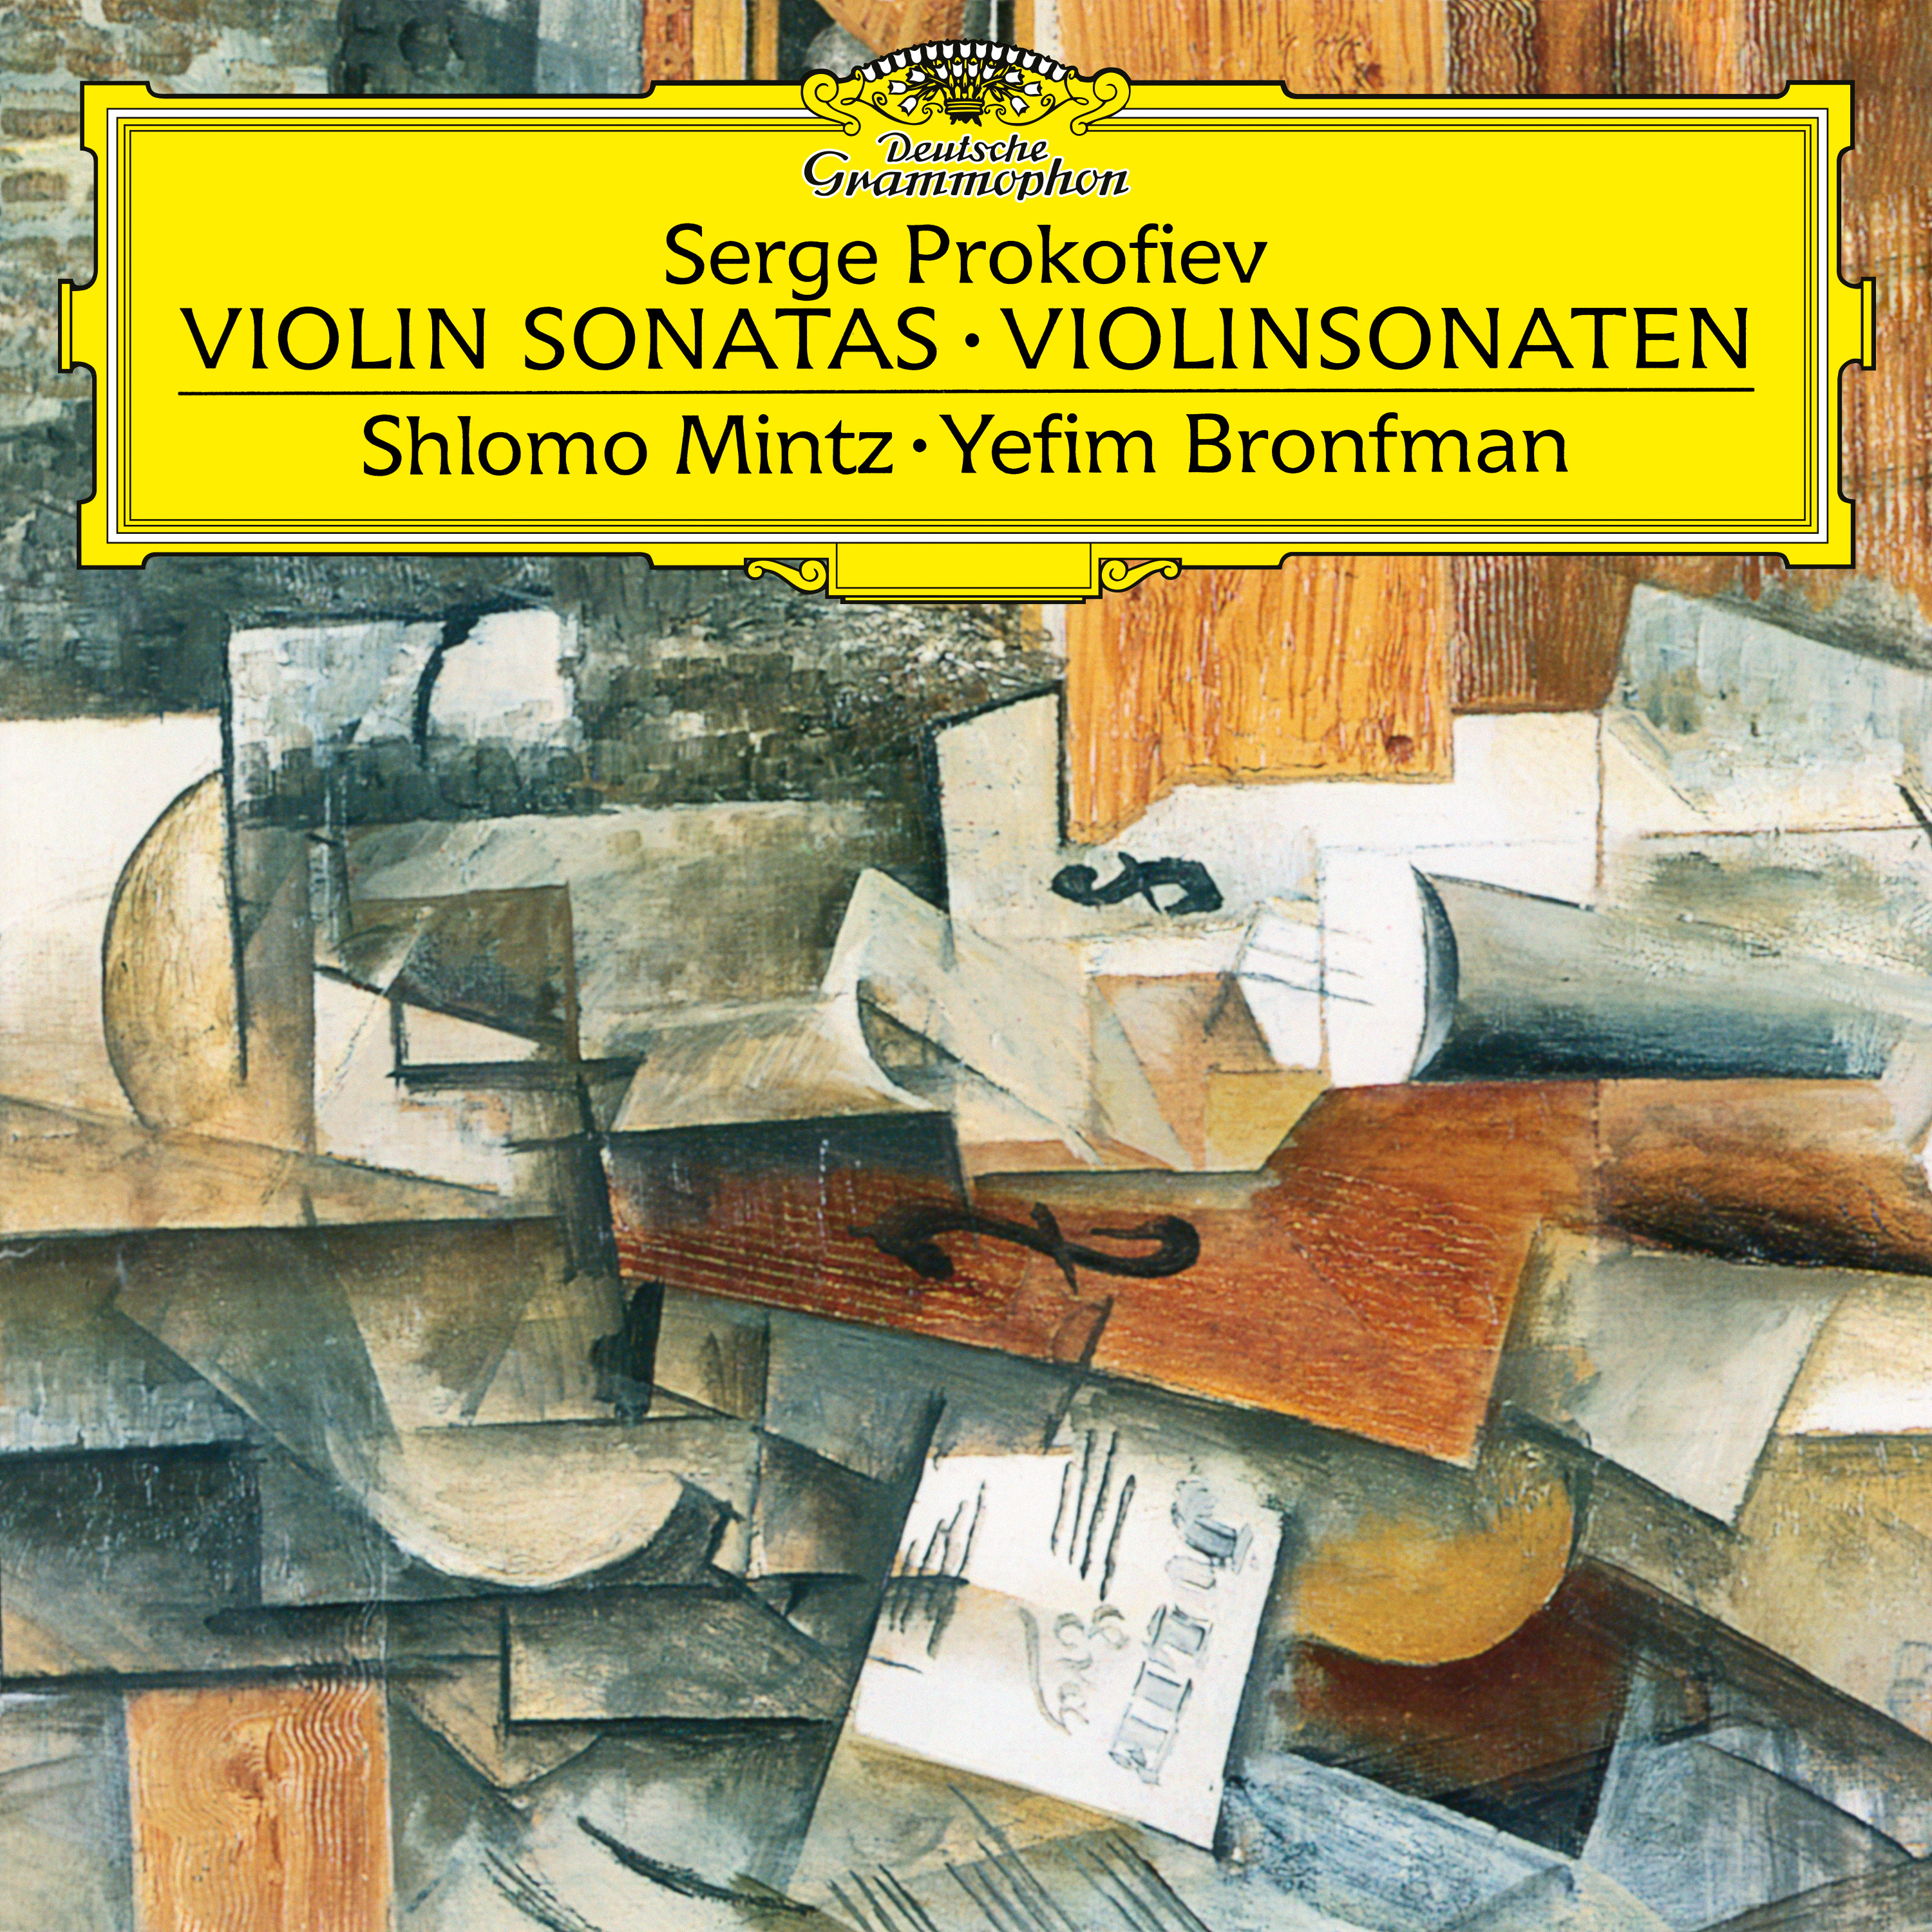 Sonata for Violin and Piano No.2 in D, Op.94b:4. Allegro con brio